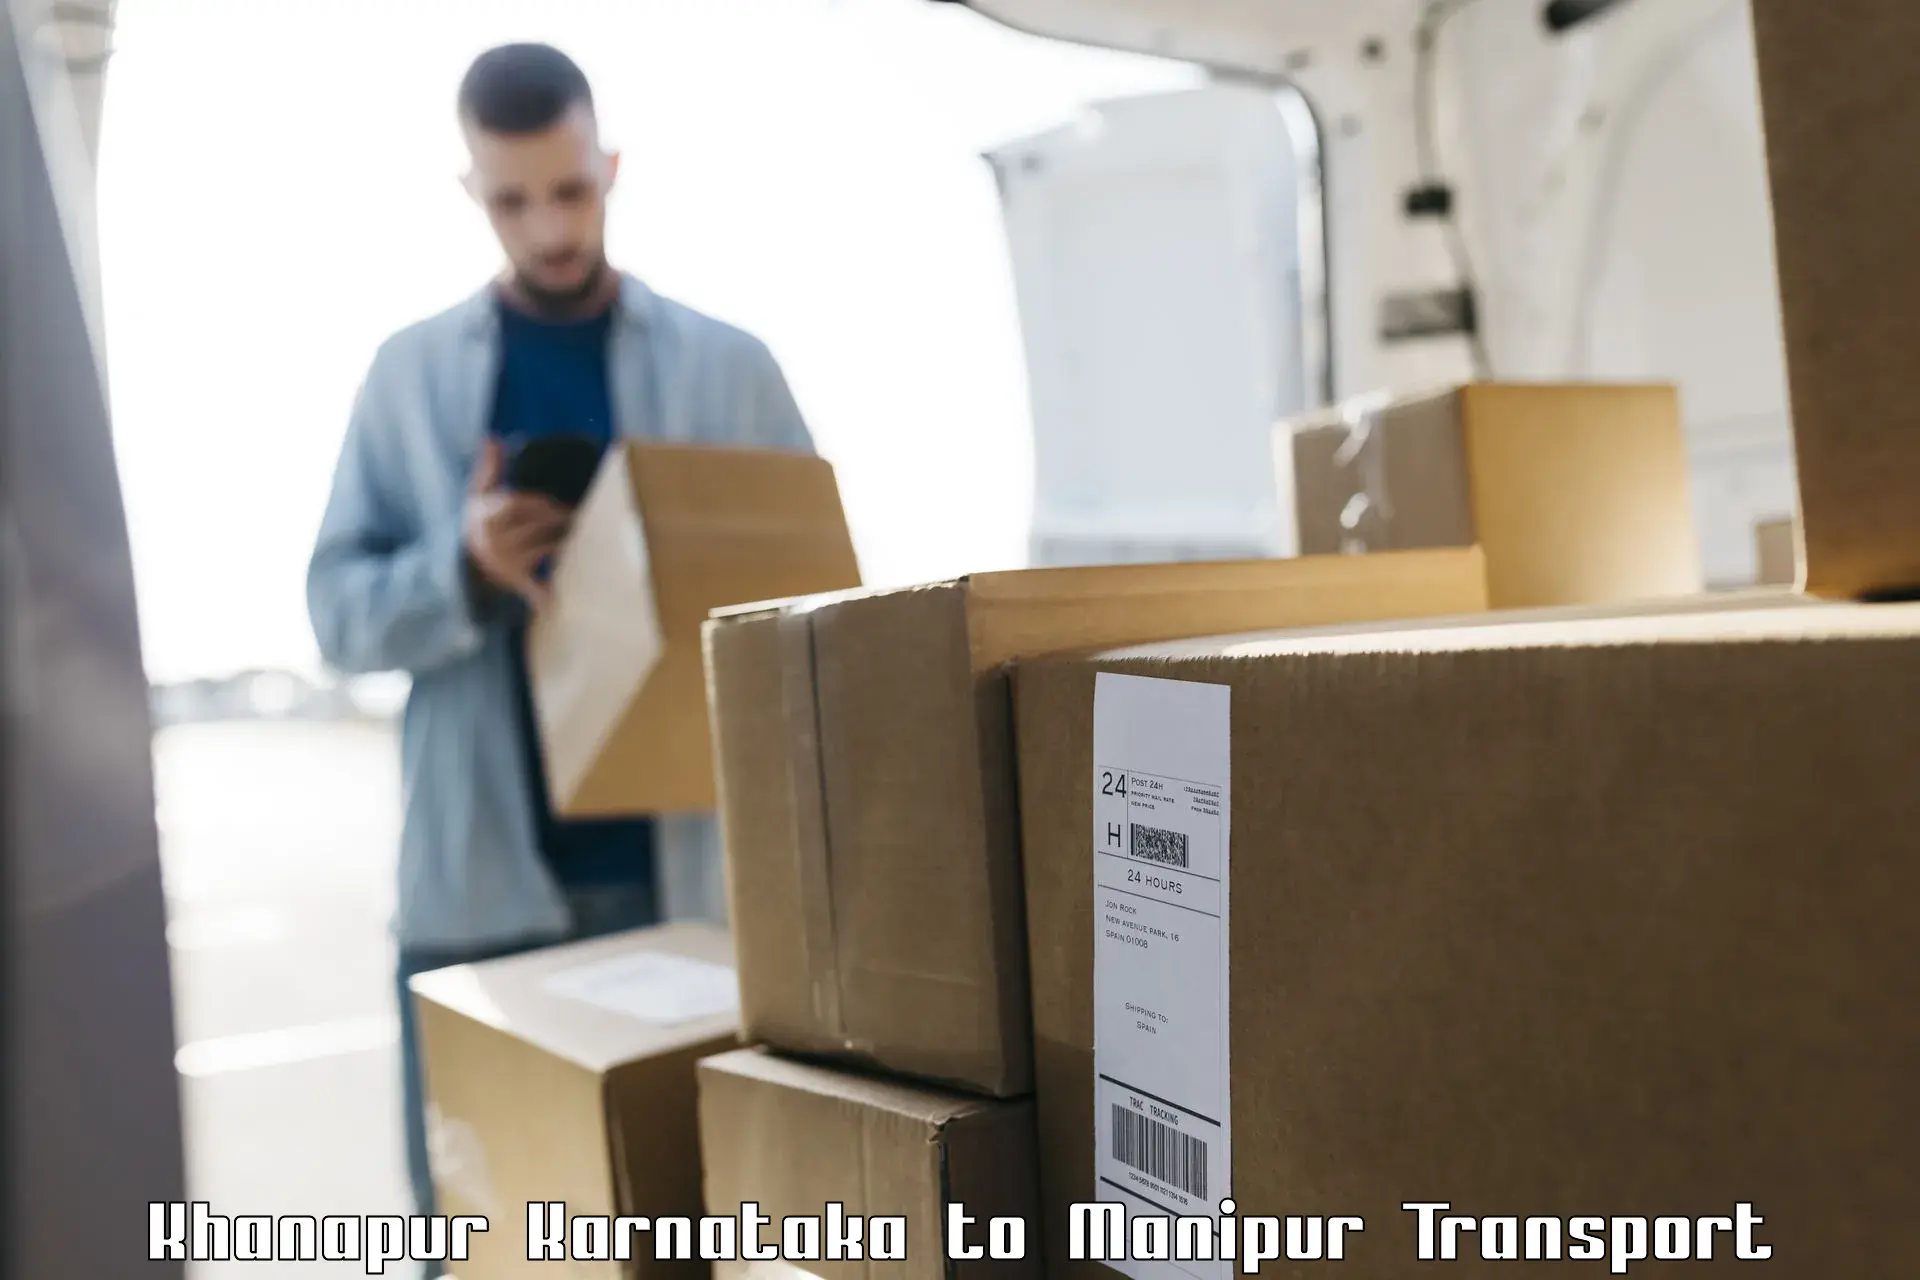 Furniture transport service Khanapur Karnataka to Manipur